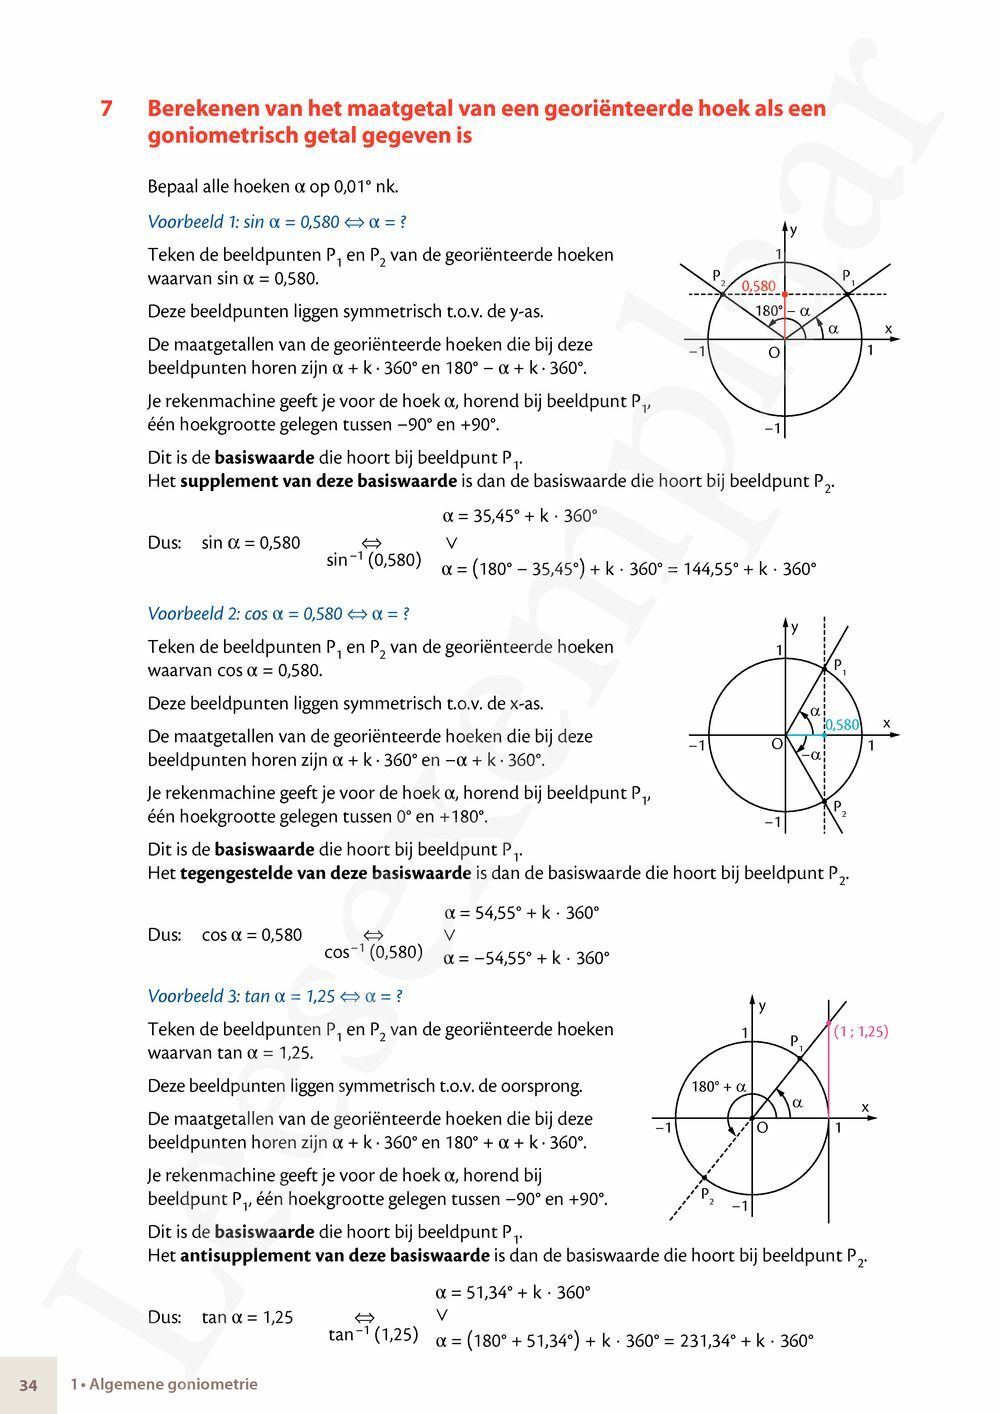 Preview: Matrix Wiskunde 4.5 Leerwerkboek B Meetkunde – Statistiek (incl. Pelckmans Portaal)